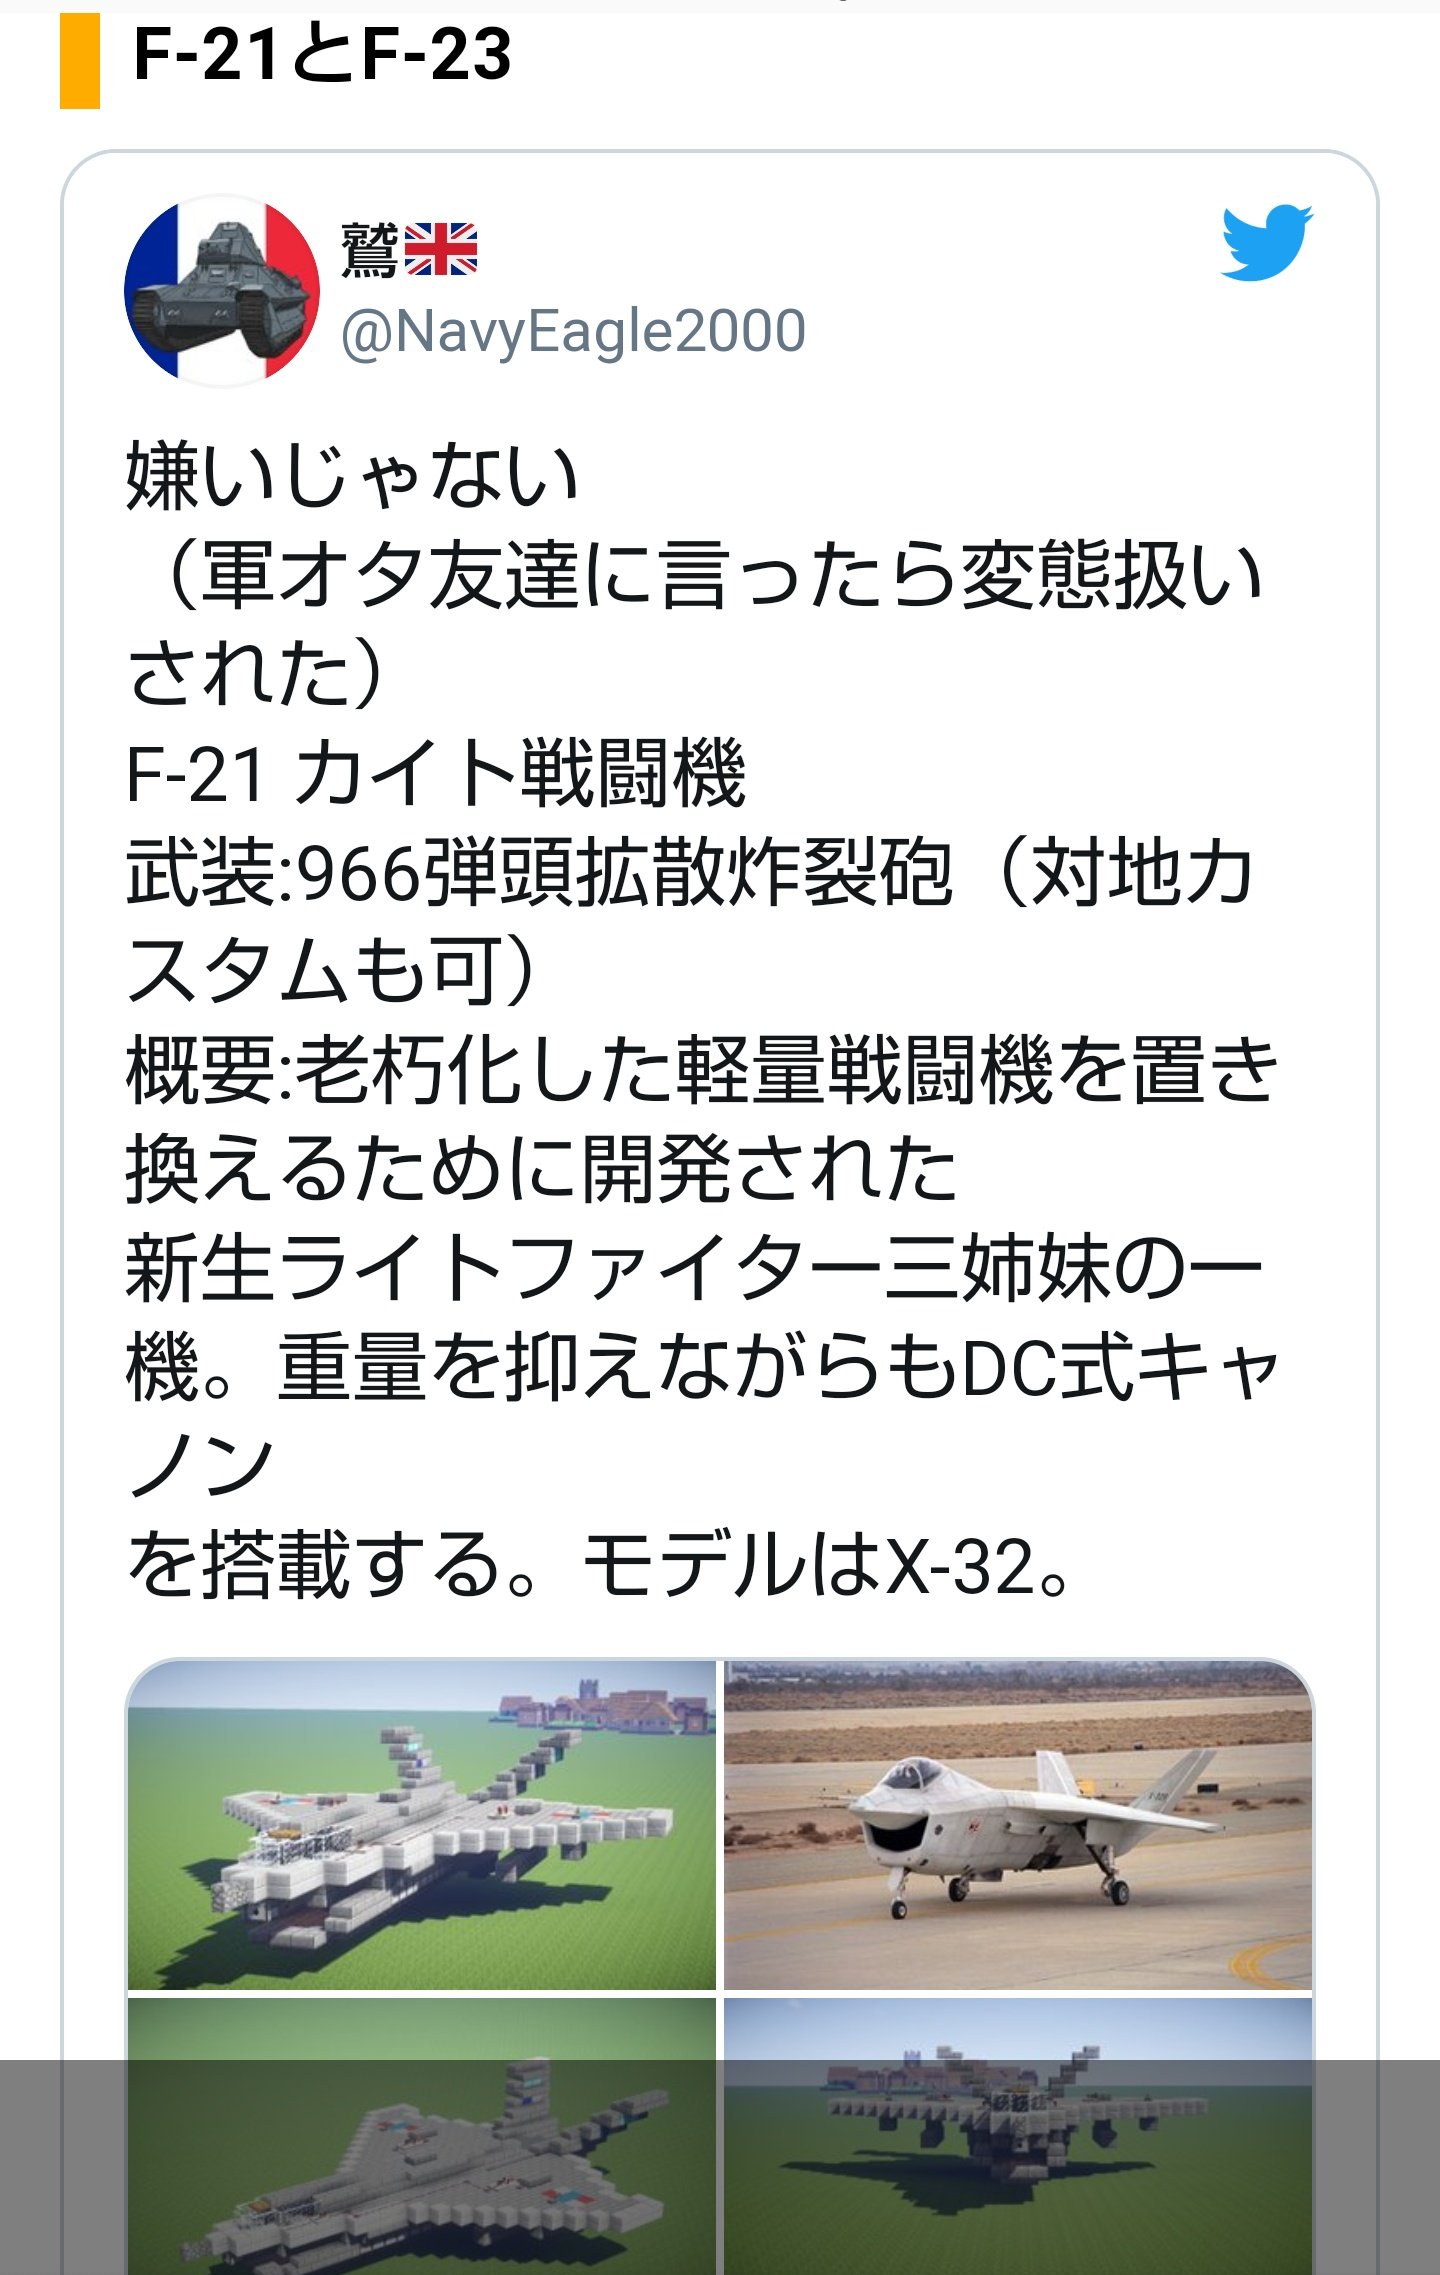 ゆき 島風 戦闘機の値段調べていたら 鷹氏のツイート出てきた てか戦闘機の値段でイージス艦ってどういことやねん T Co Kqyi41tv7p Twitter